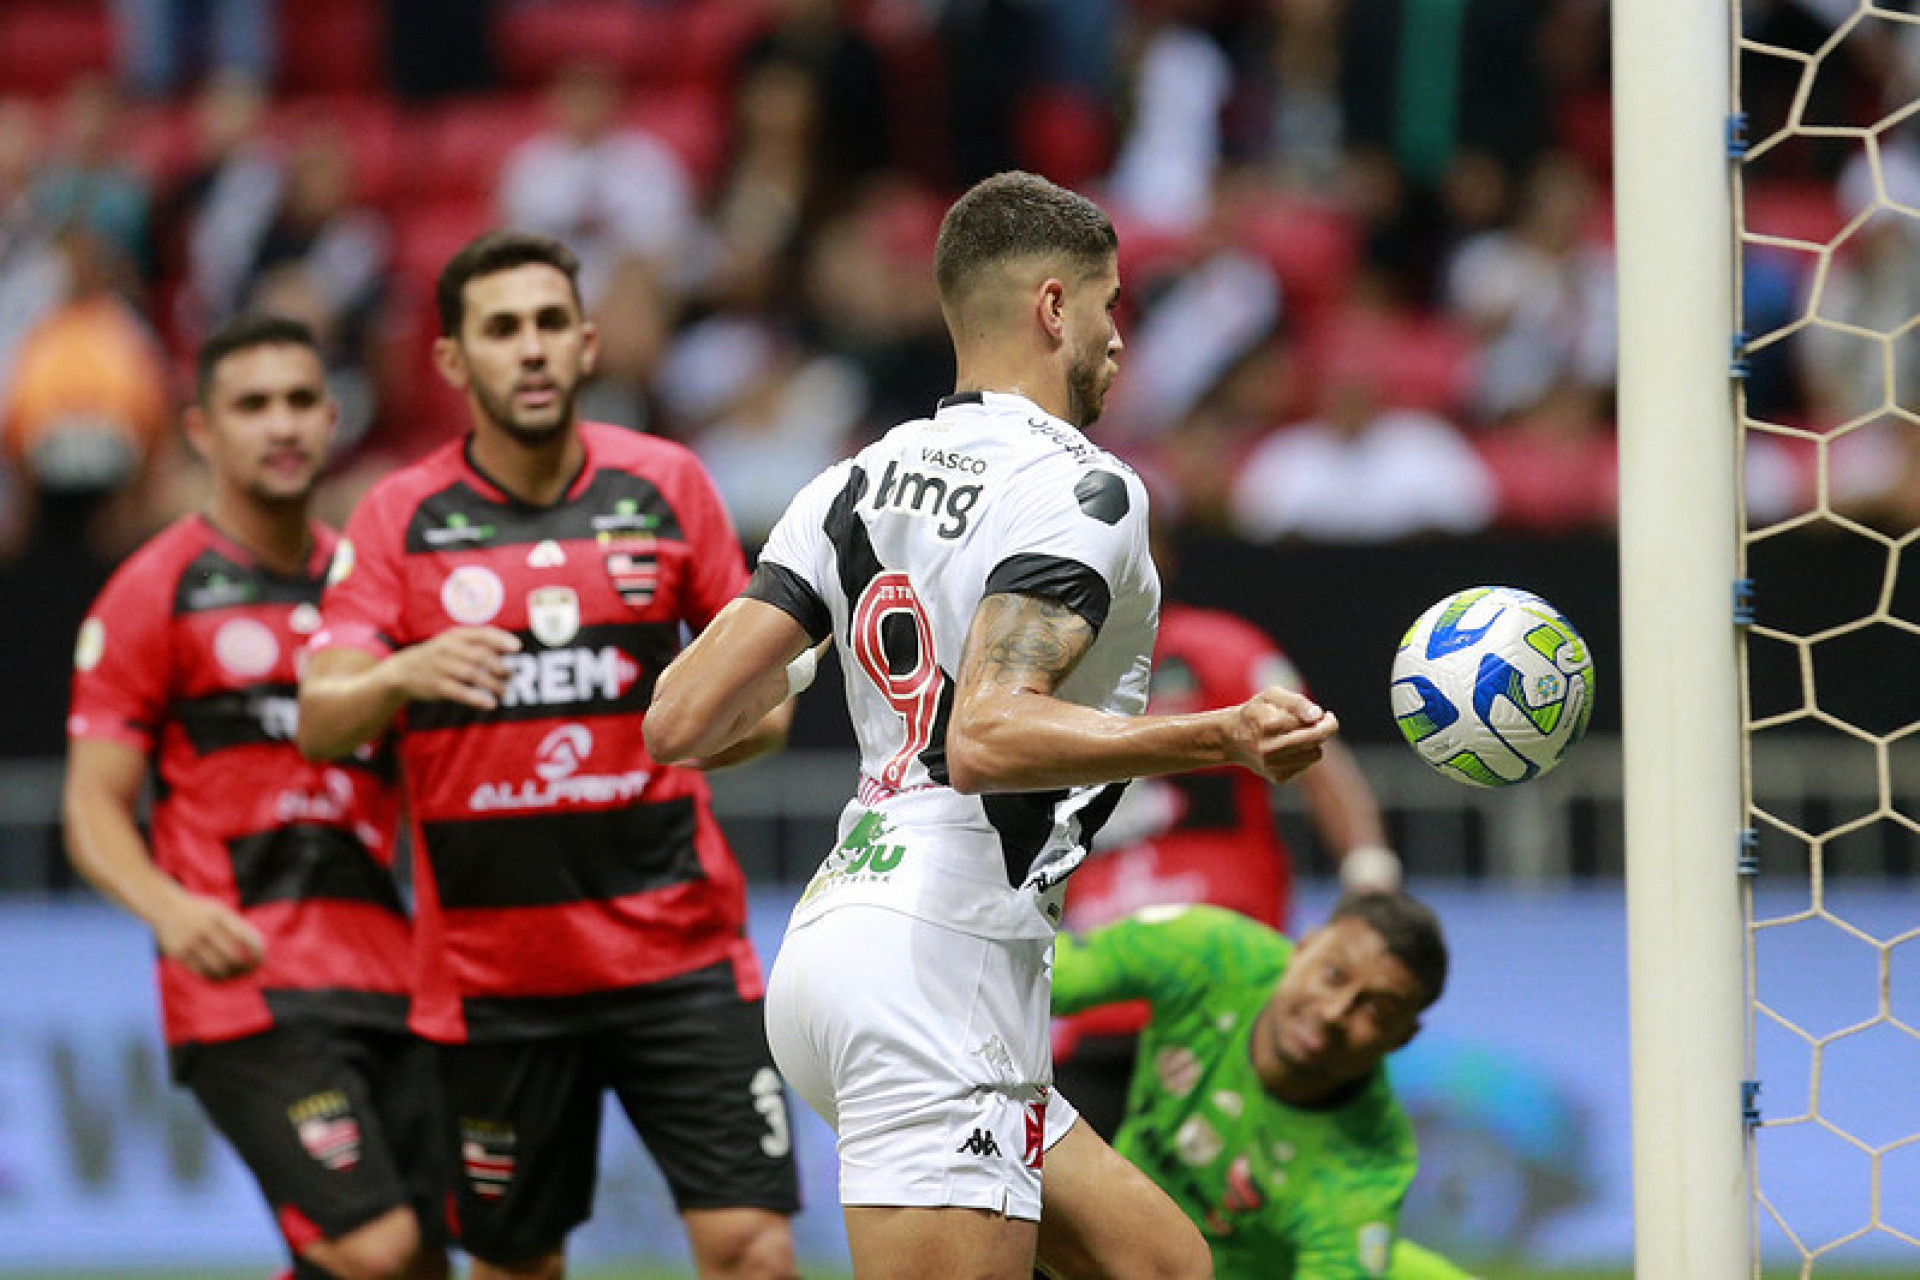 Pedro Raul finaliza de peito para fazer o segundo gol do Vasco contra o Trem-AP - FOTO: Daniel RAMALHO/VASCO